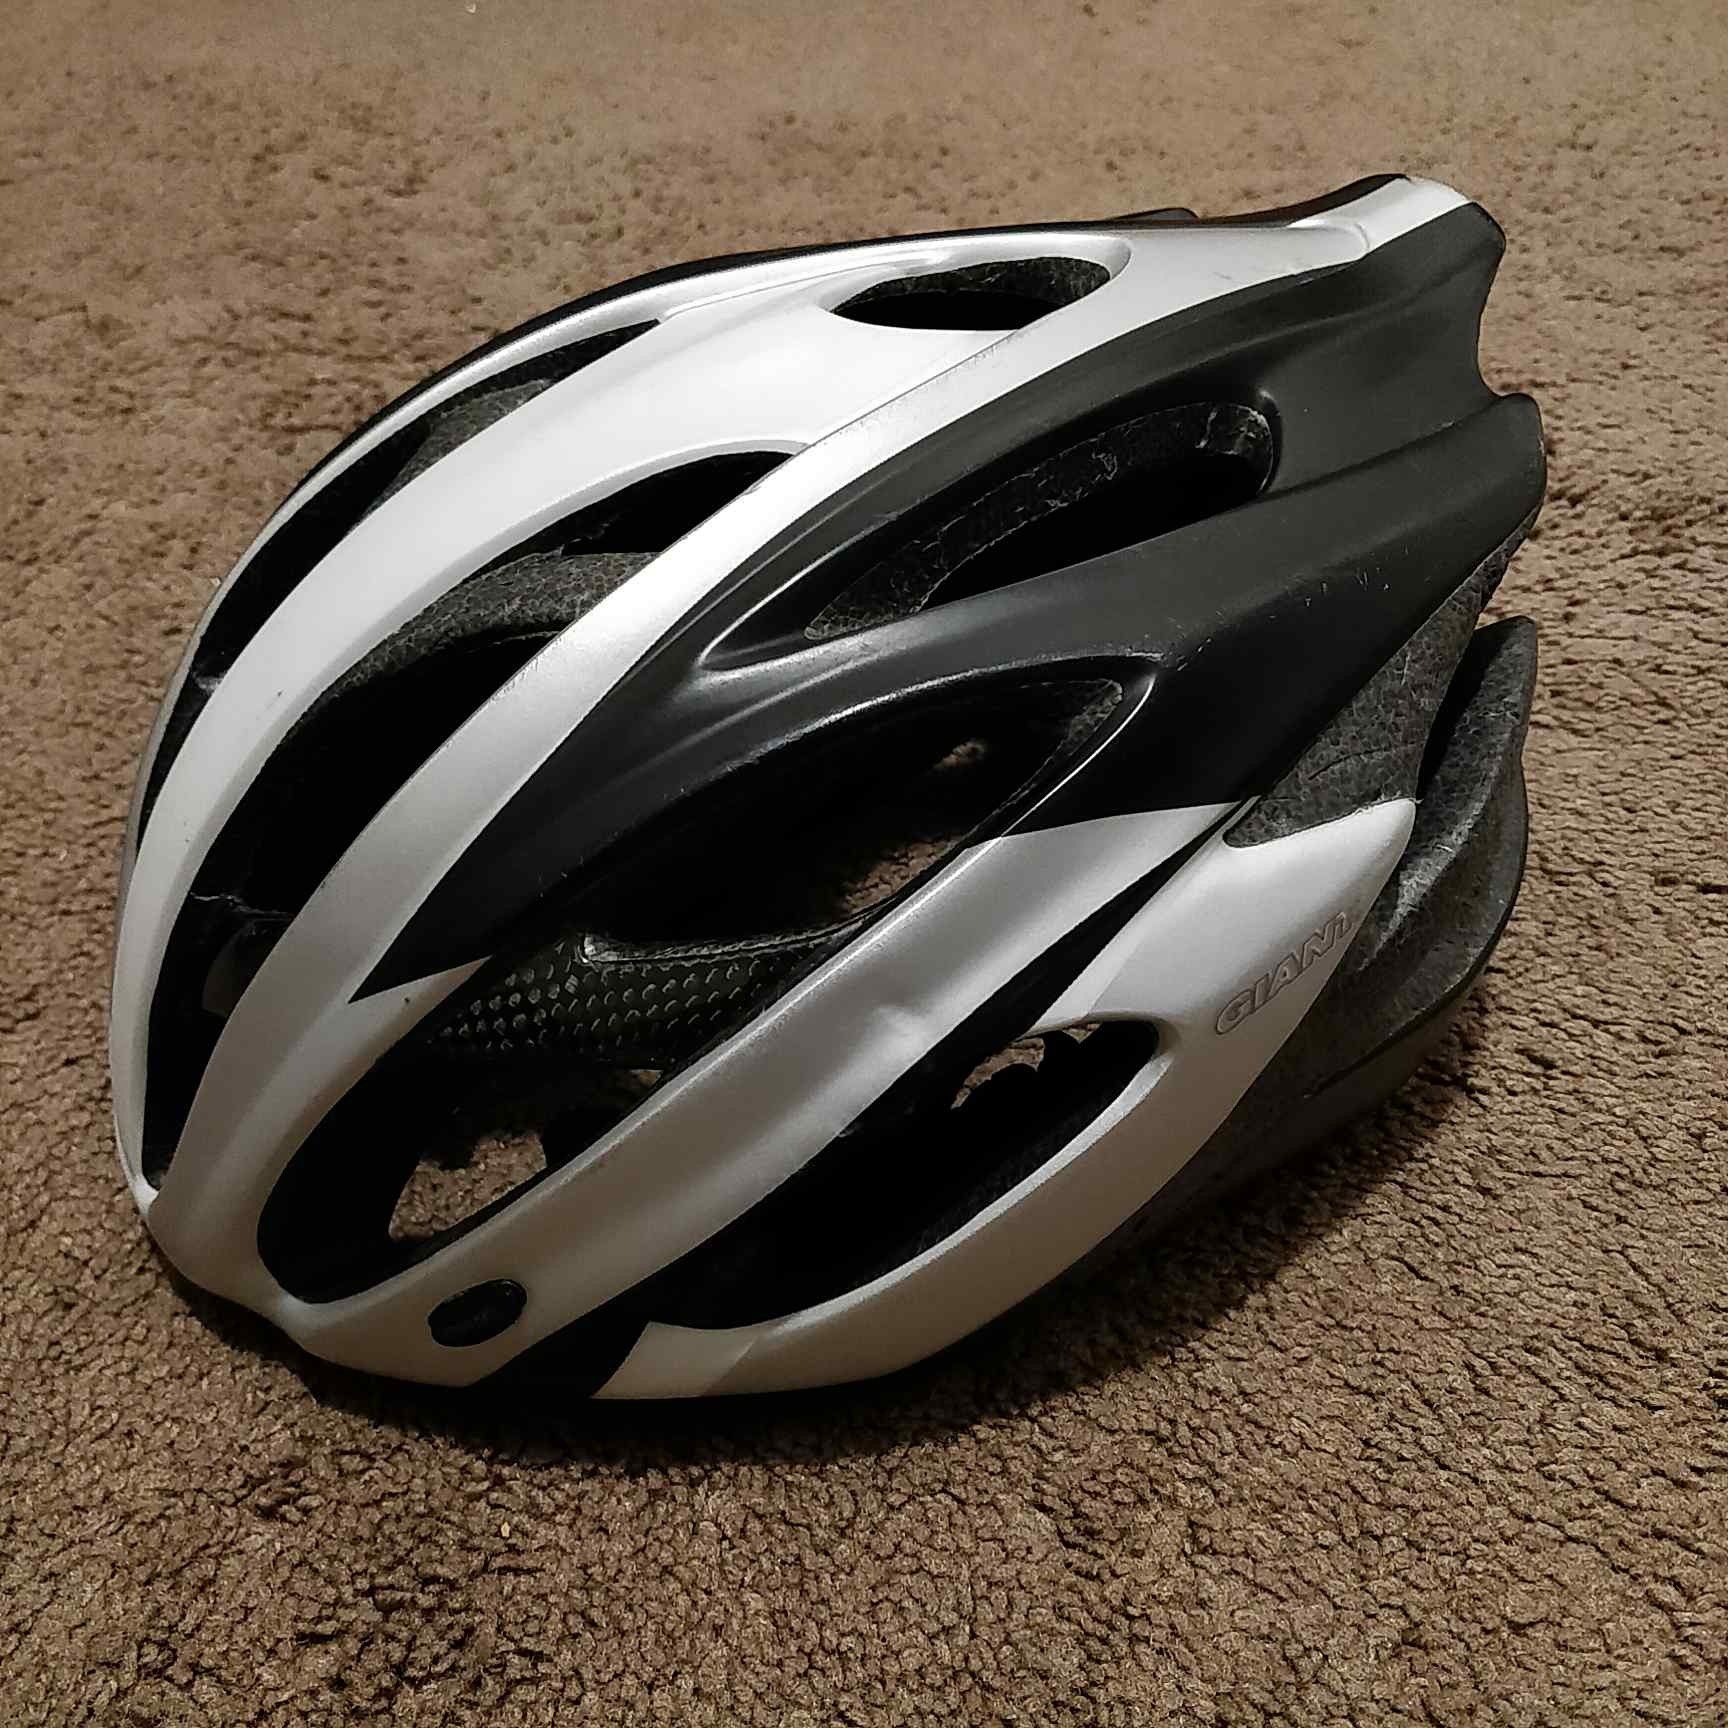 Giant brand Ares bike helmet